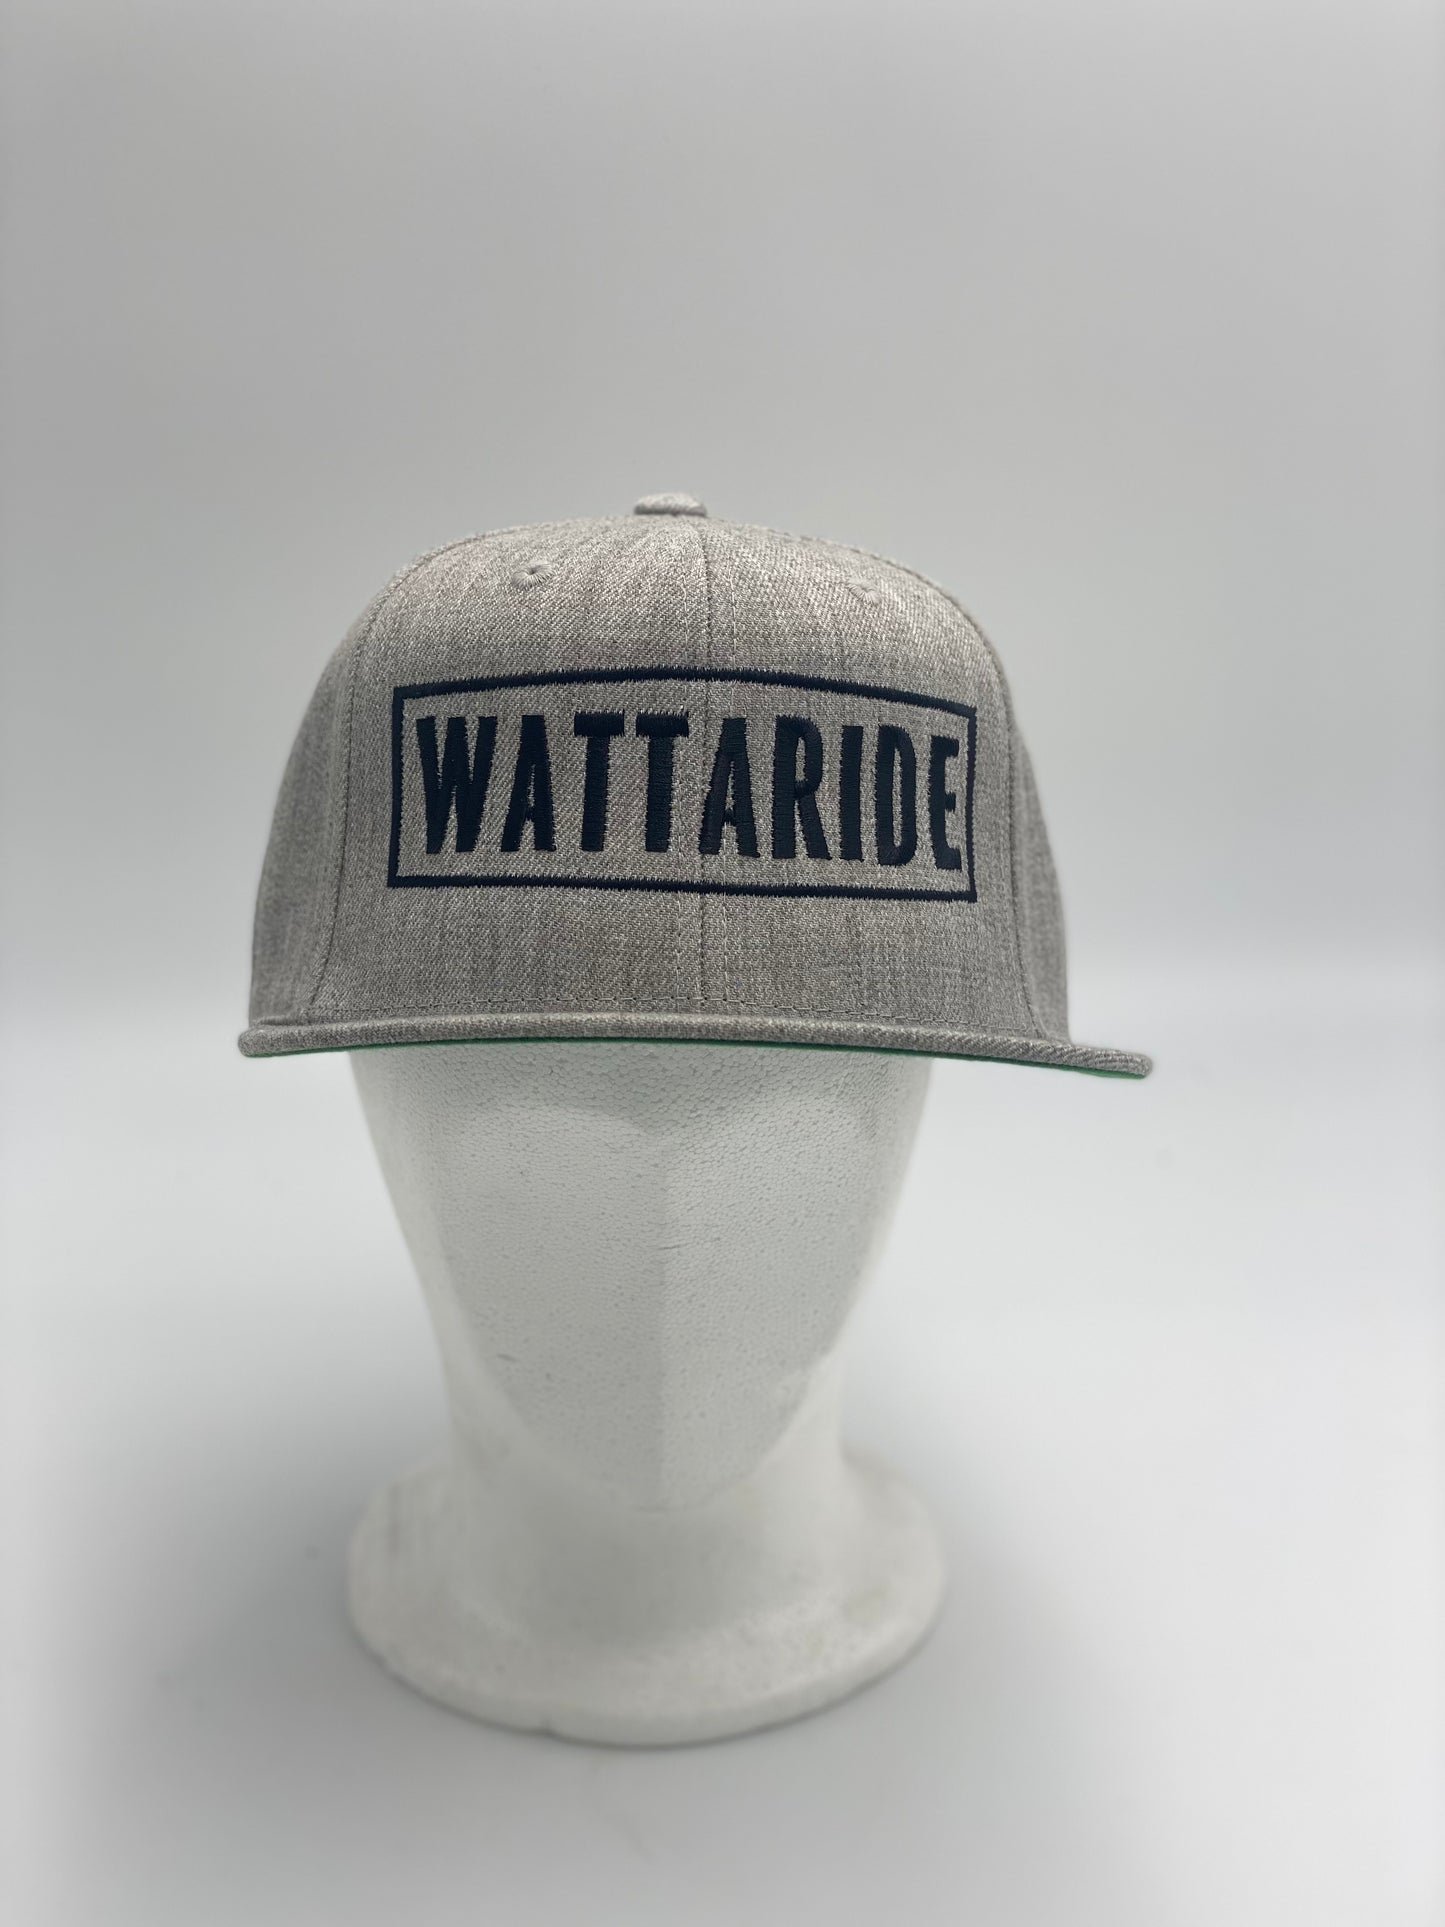 Watt-a-cap